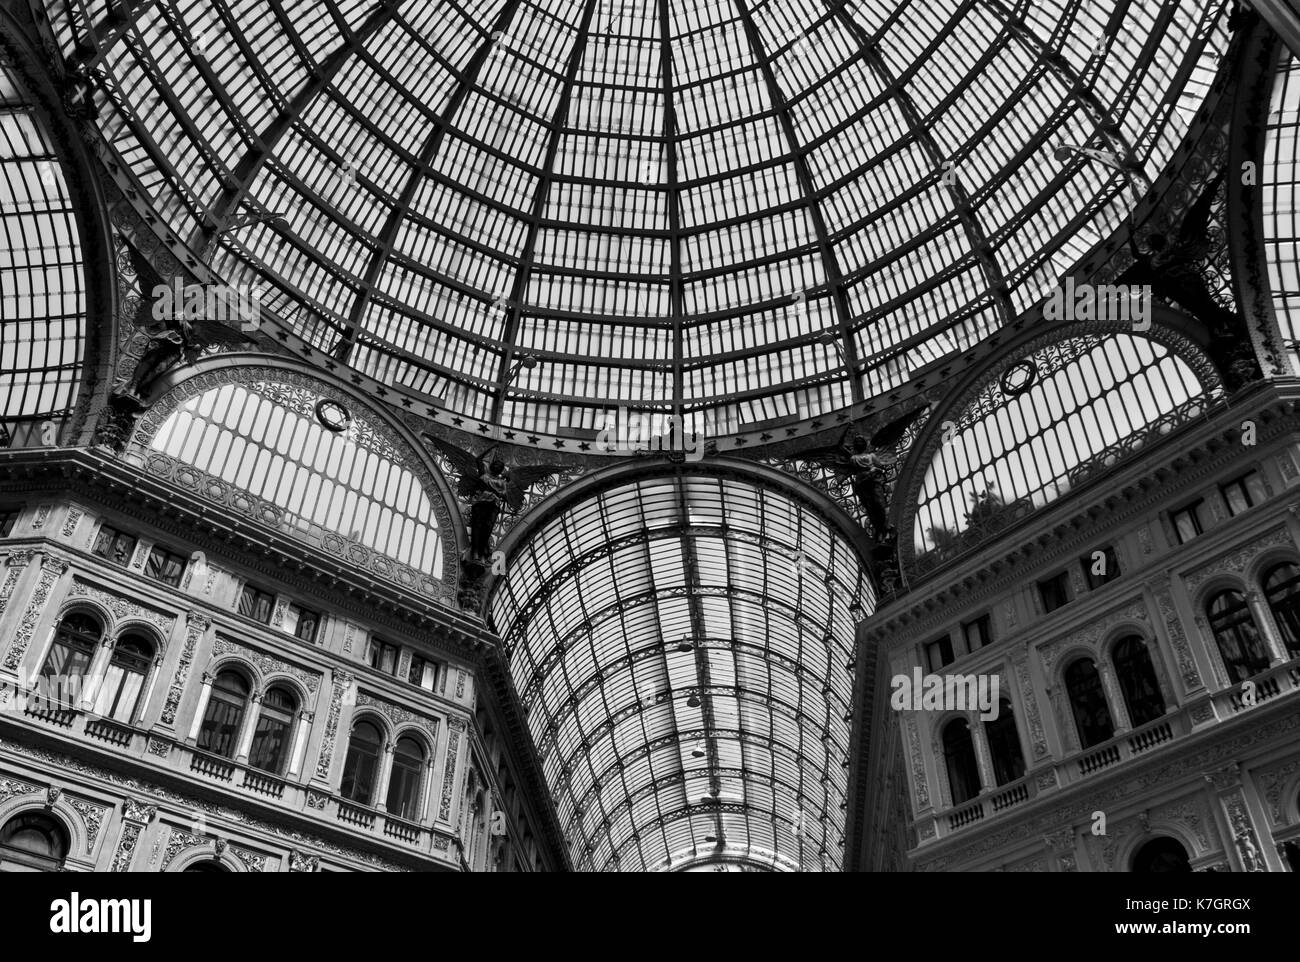 Neapel, Italien, 10. August 2014: Umberto I Galerie atrchitectural Detail, Ansicht der großen glasüberdachten Arcade, vielleicht die größte in der Welt. Stockfoto